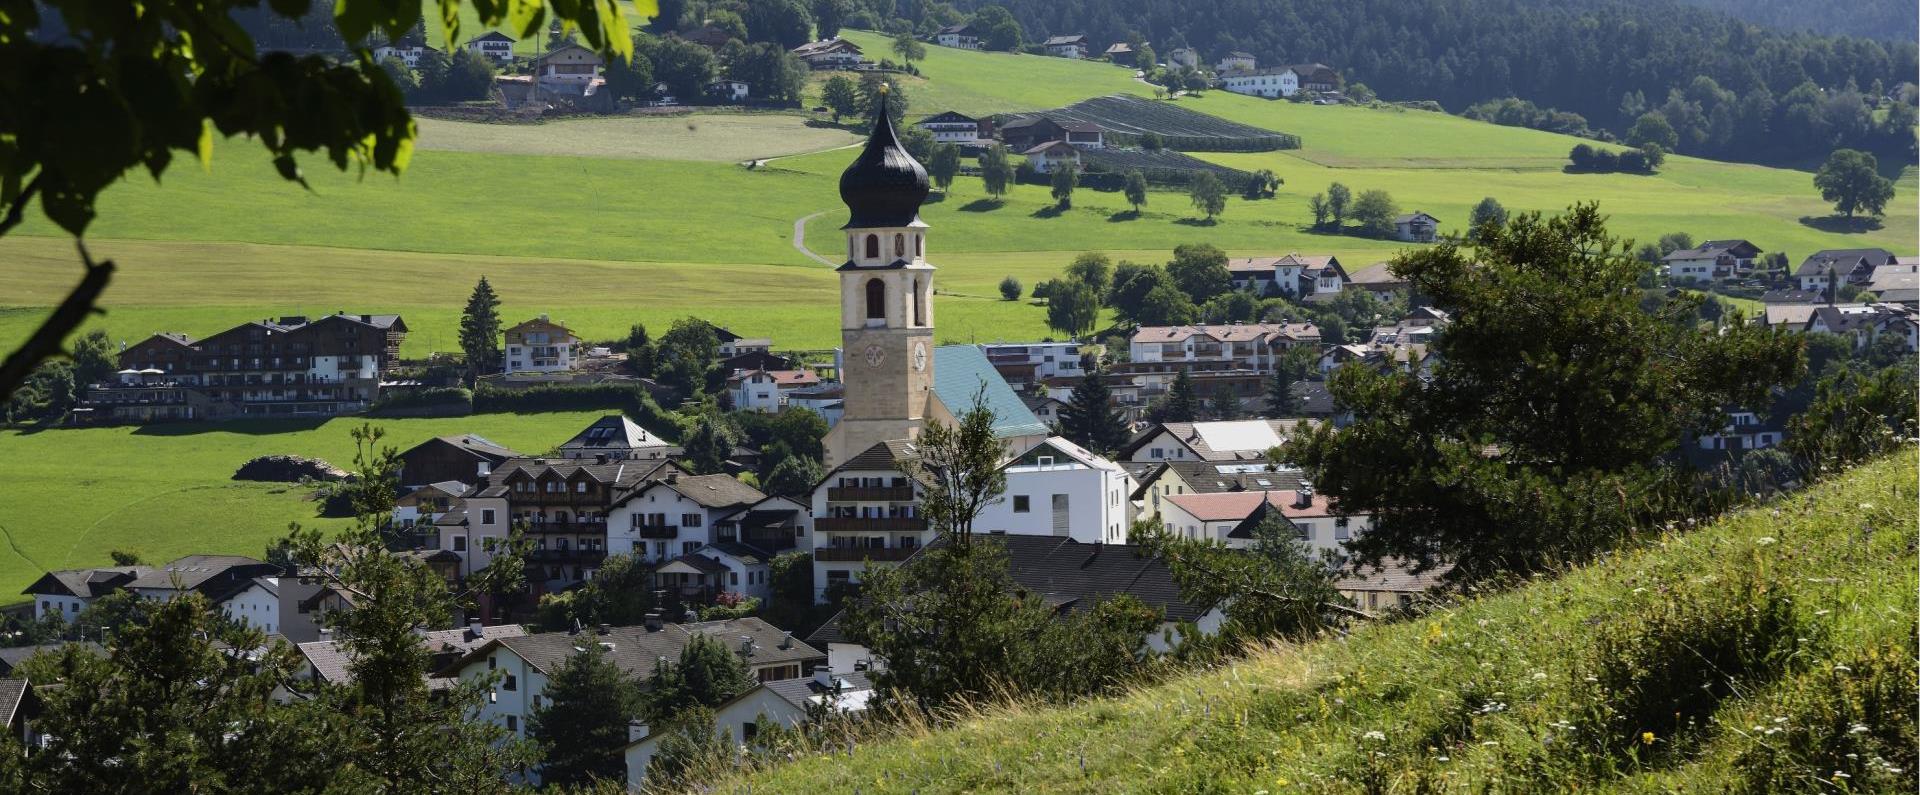 Völs am Schlern am Fuße des Wahrzeichens Südtirol wo Törggele und guter Wein zuhause ist